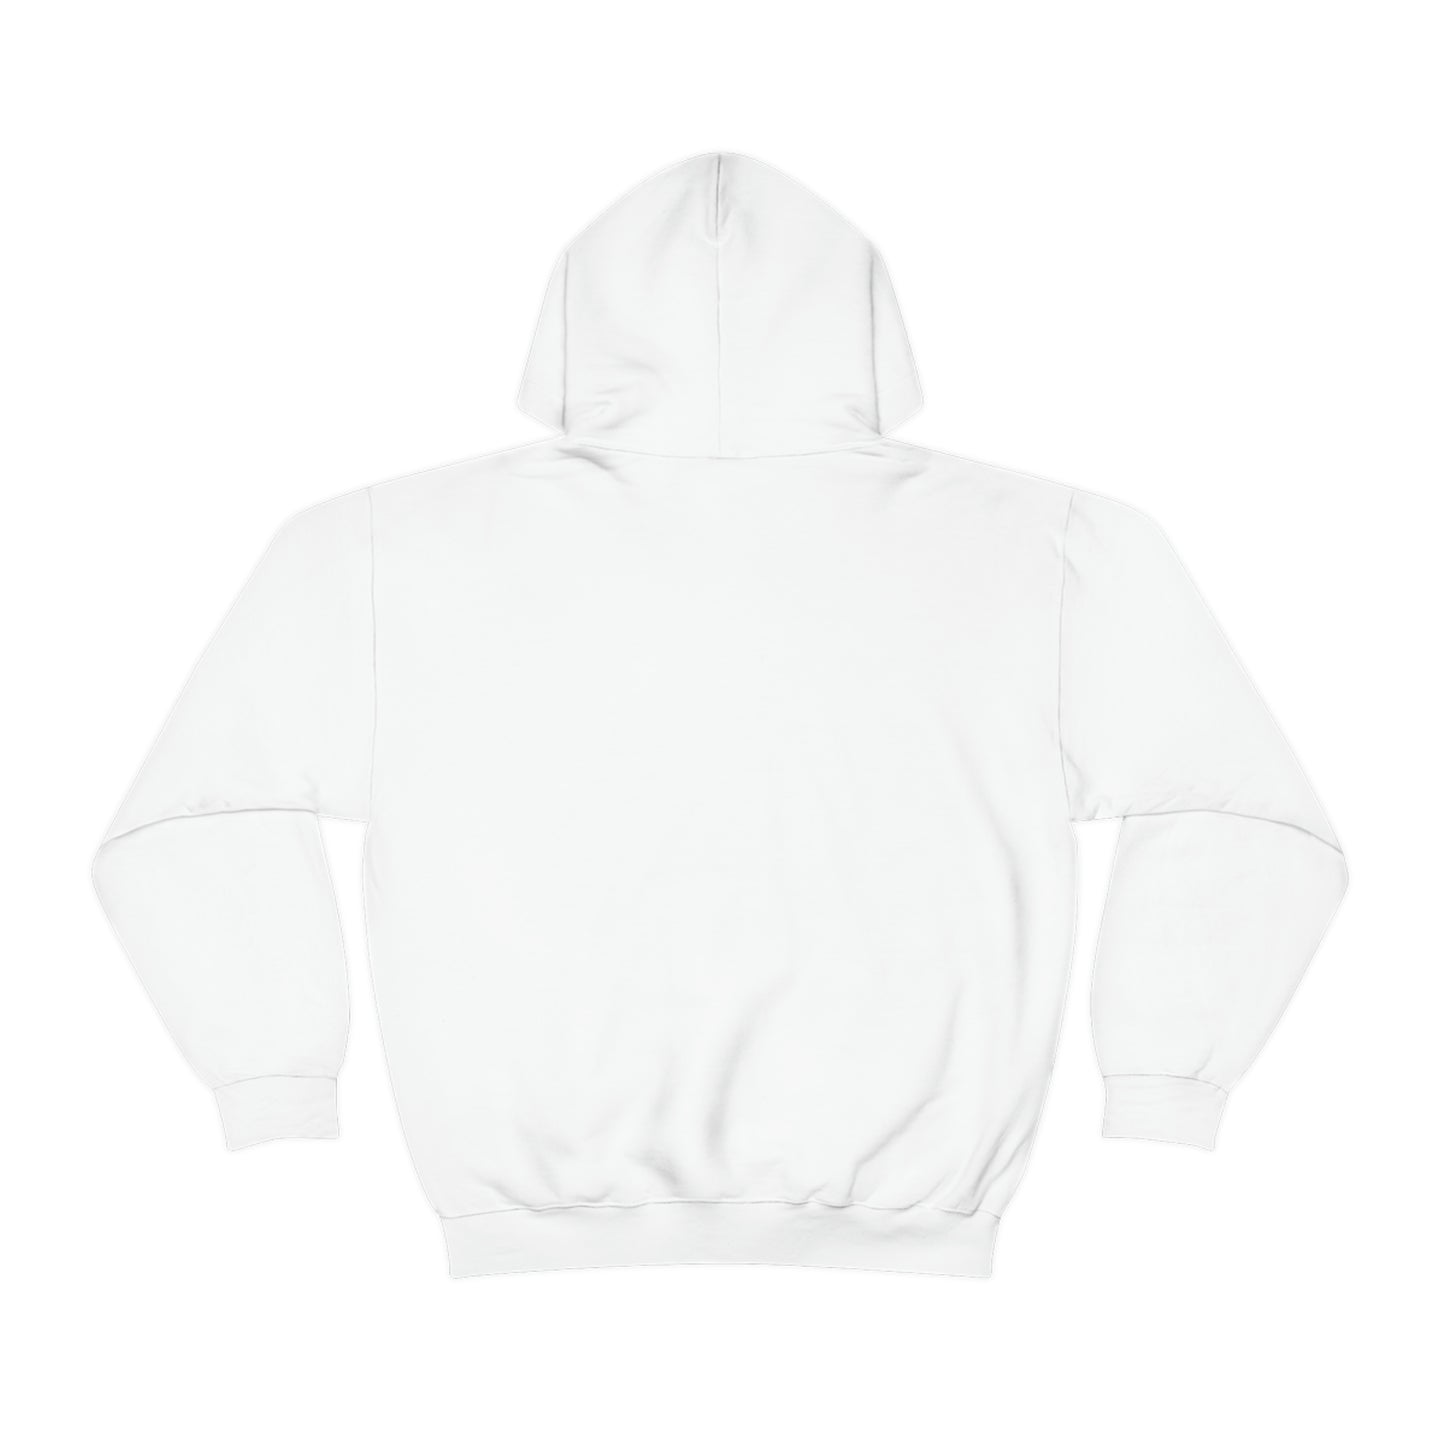 “Sorry” Hooded Sweatshirt